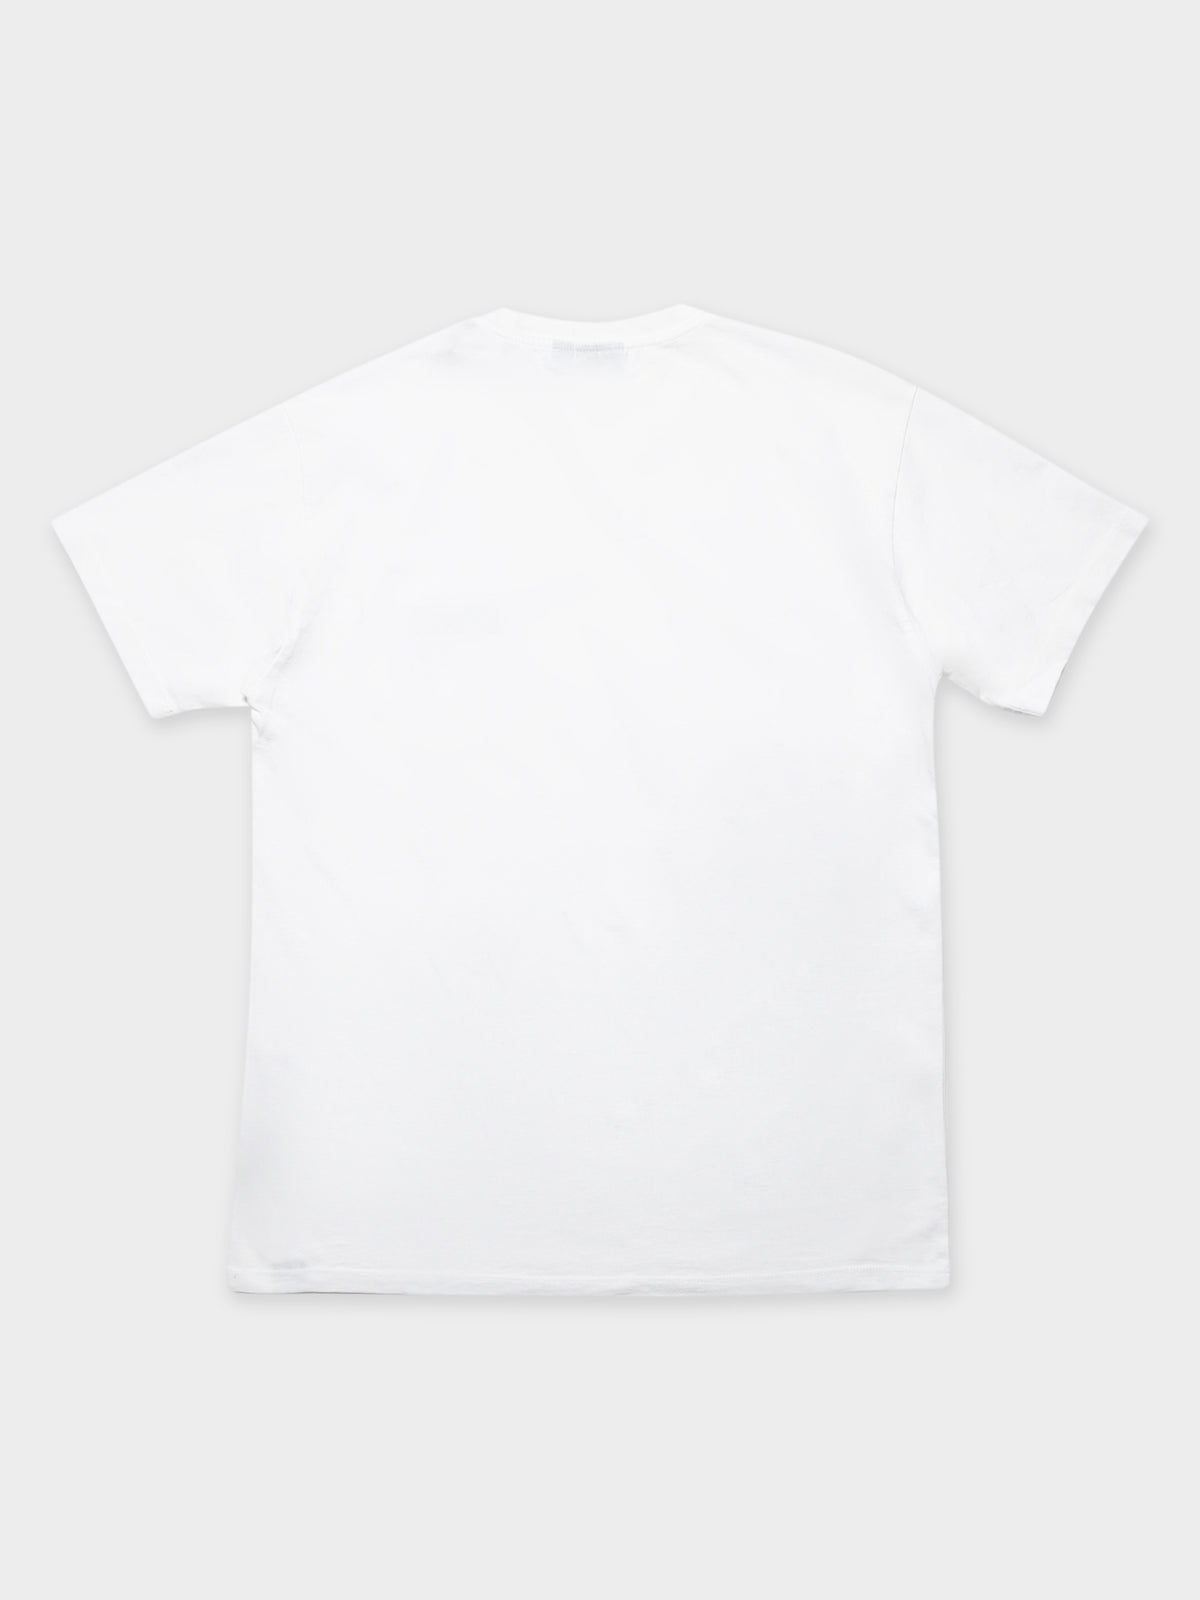 Sase SS 1 T-Shirt in White